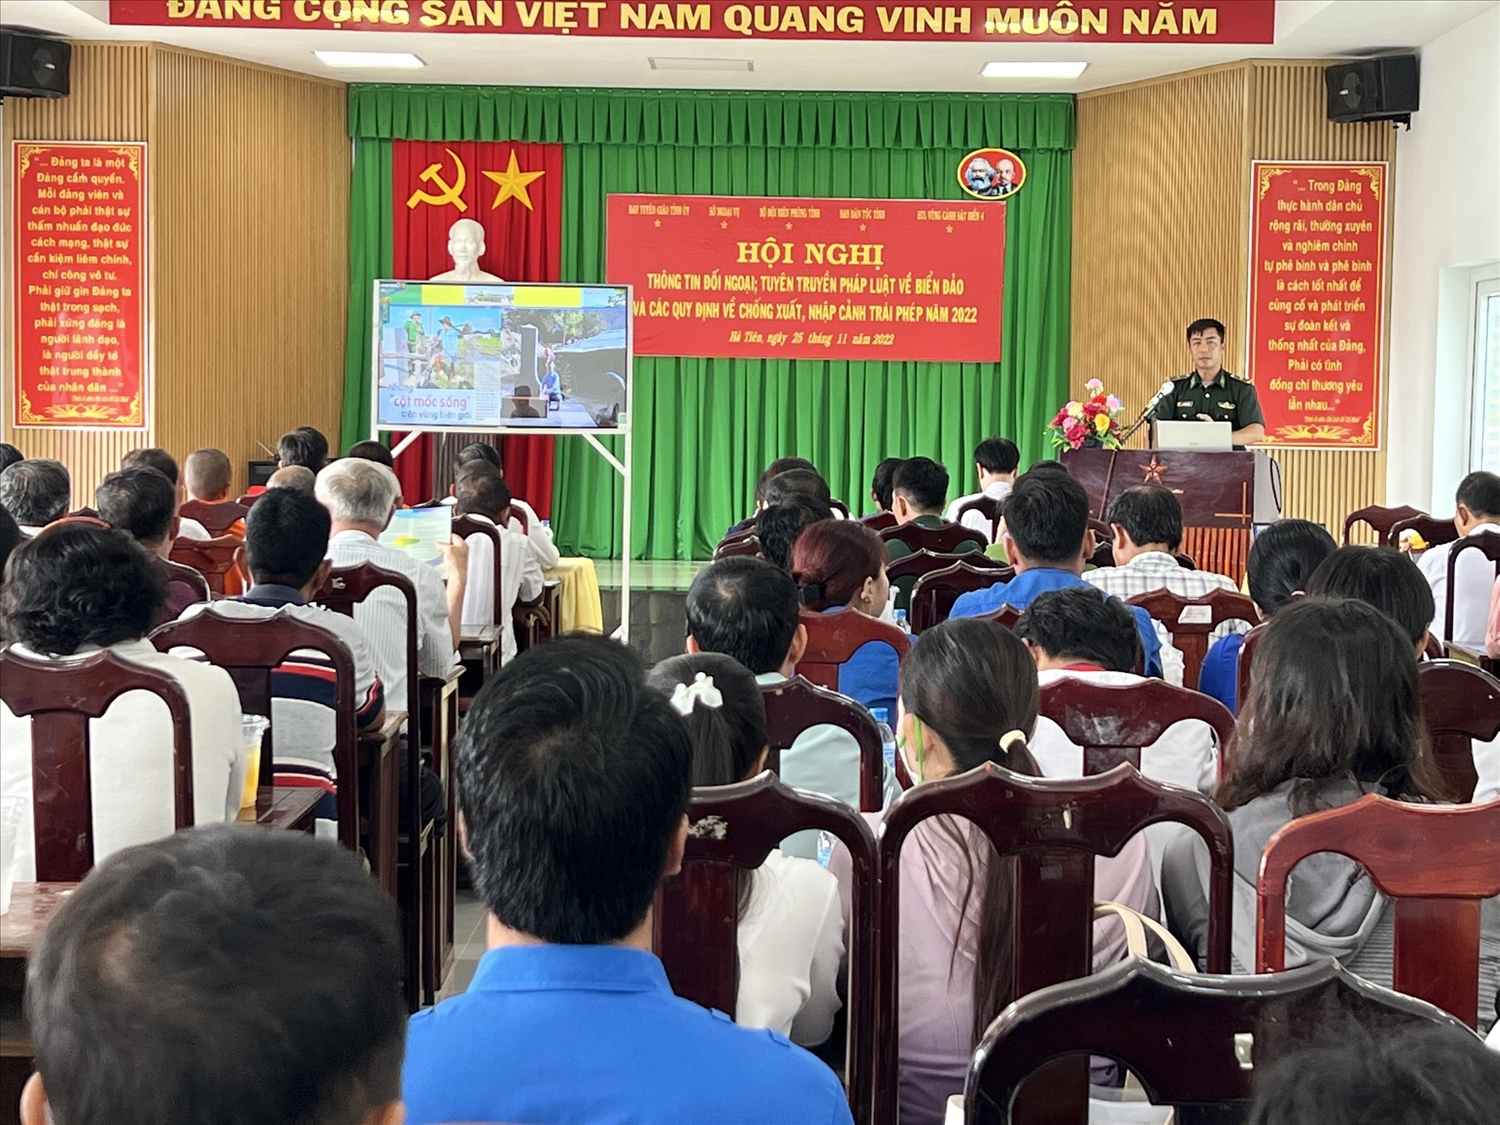  Thiếu tá Trần Mạnh Trình, Phó Đồn trưởng Đồn biên phòng Cửa khẩu quốc tế Hà Tiên tuyên truyền Luật Biên phòng Việt Nam